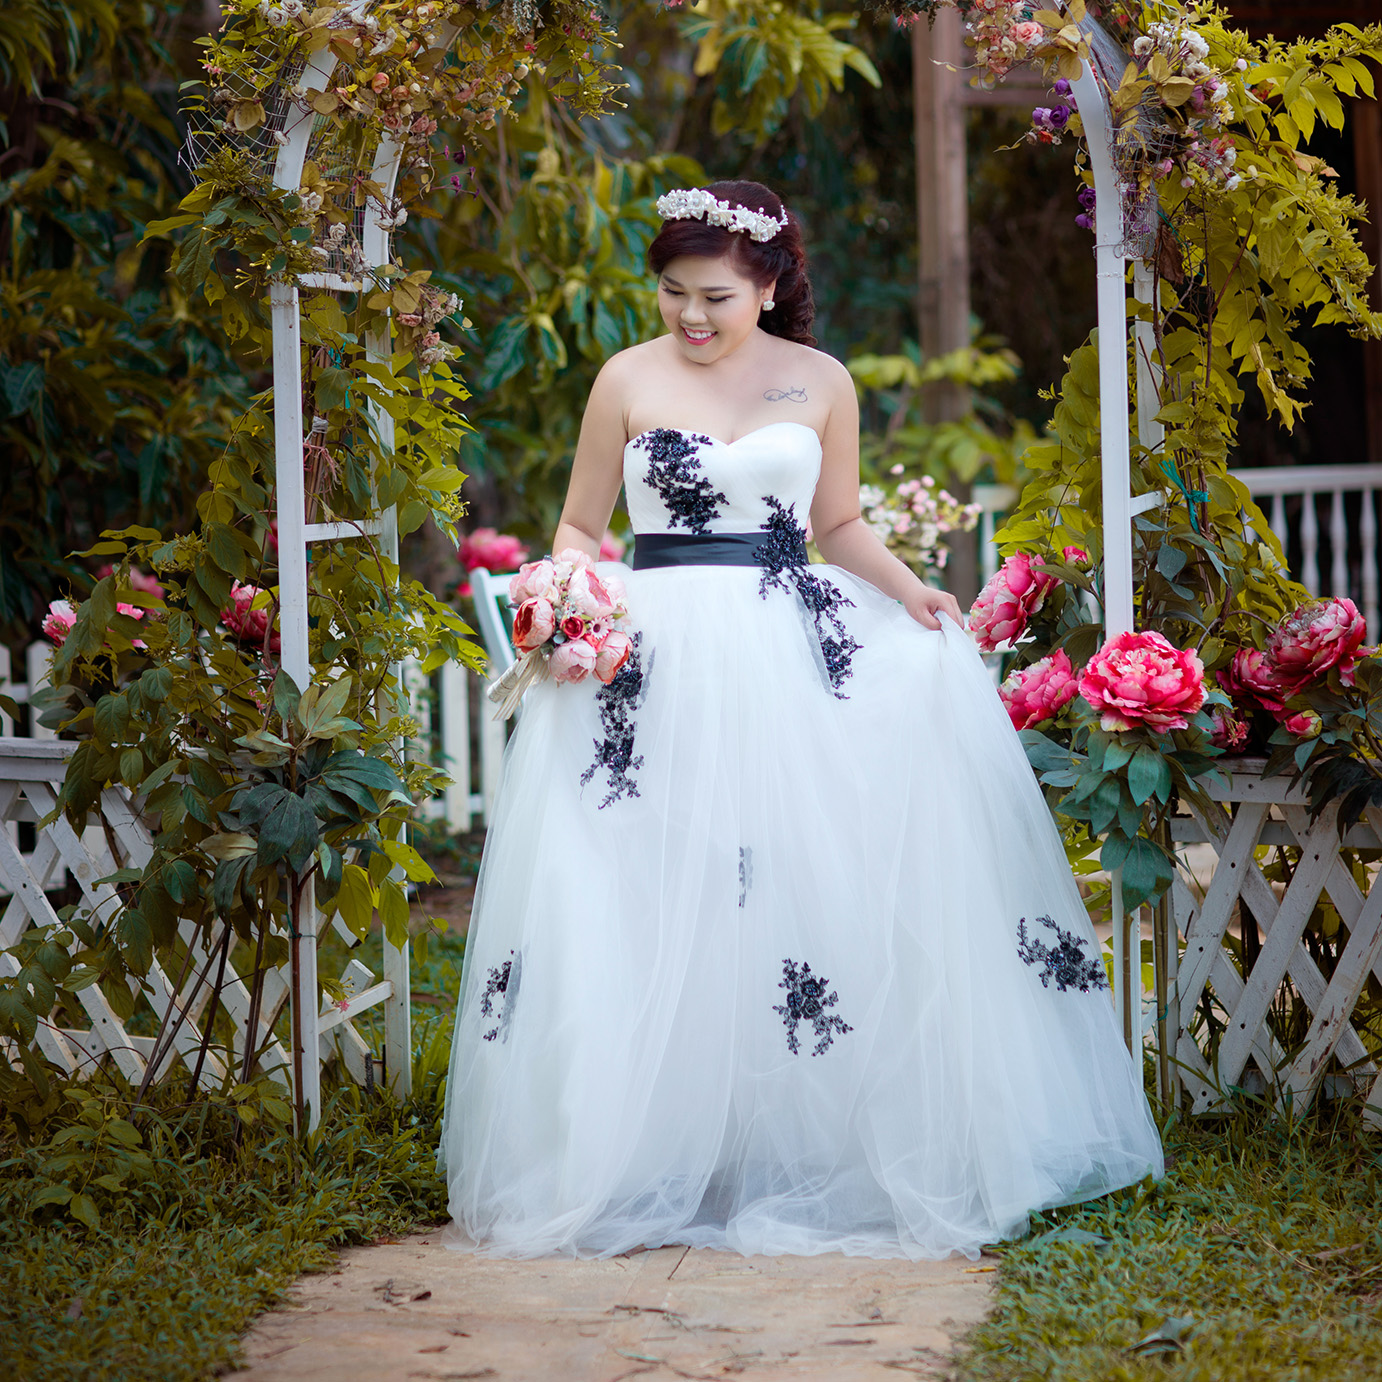 Những mẫu váy cưới đẹp hút hồn dành cho cô dâu siêu gầy